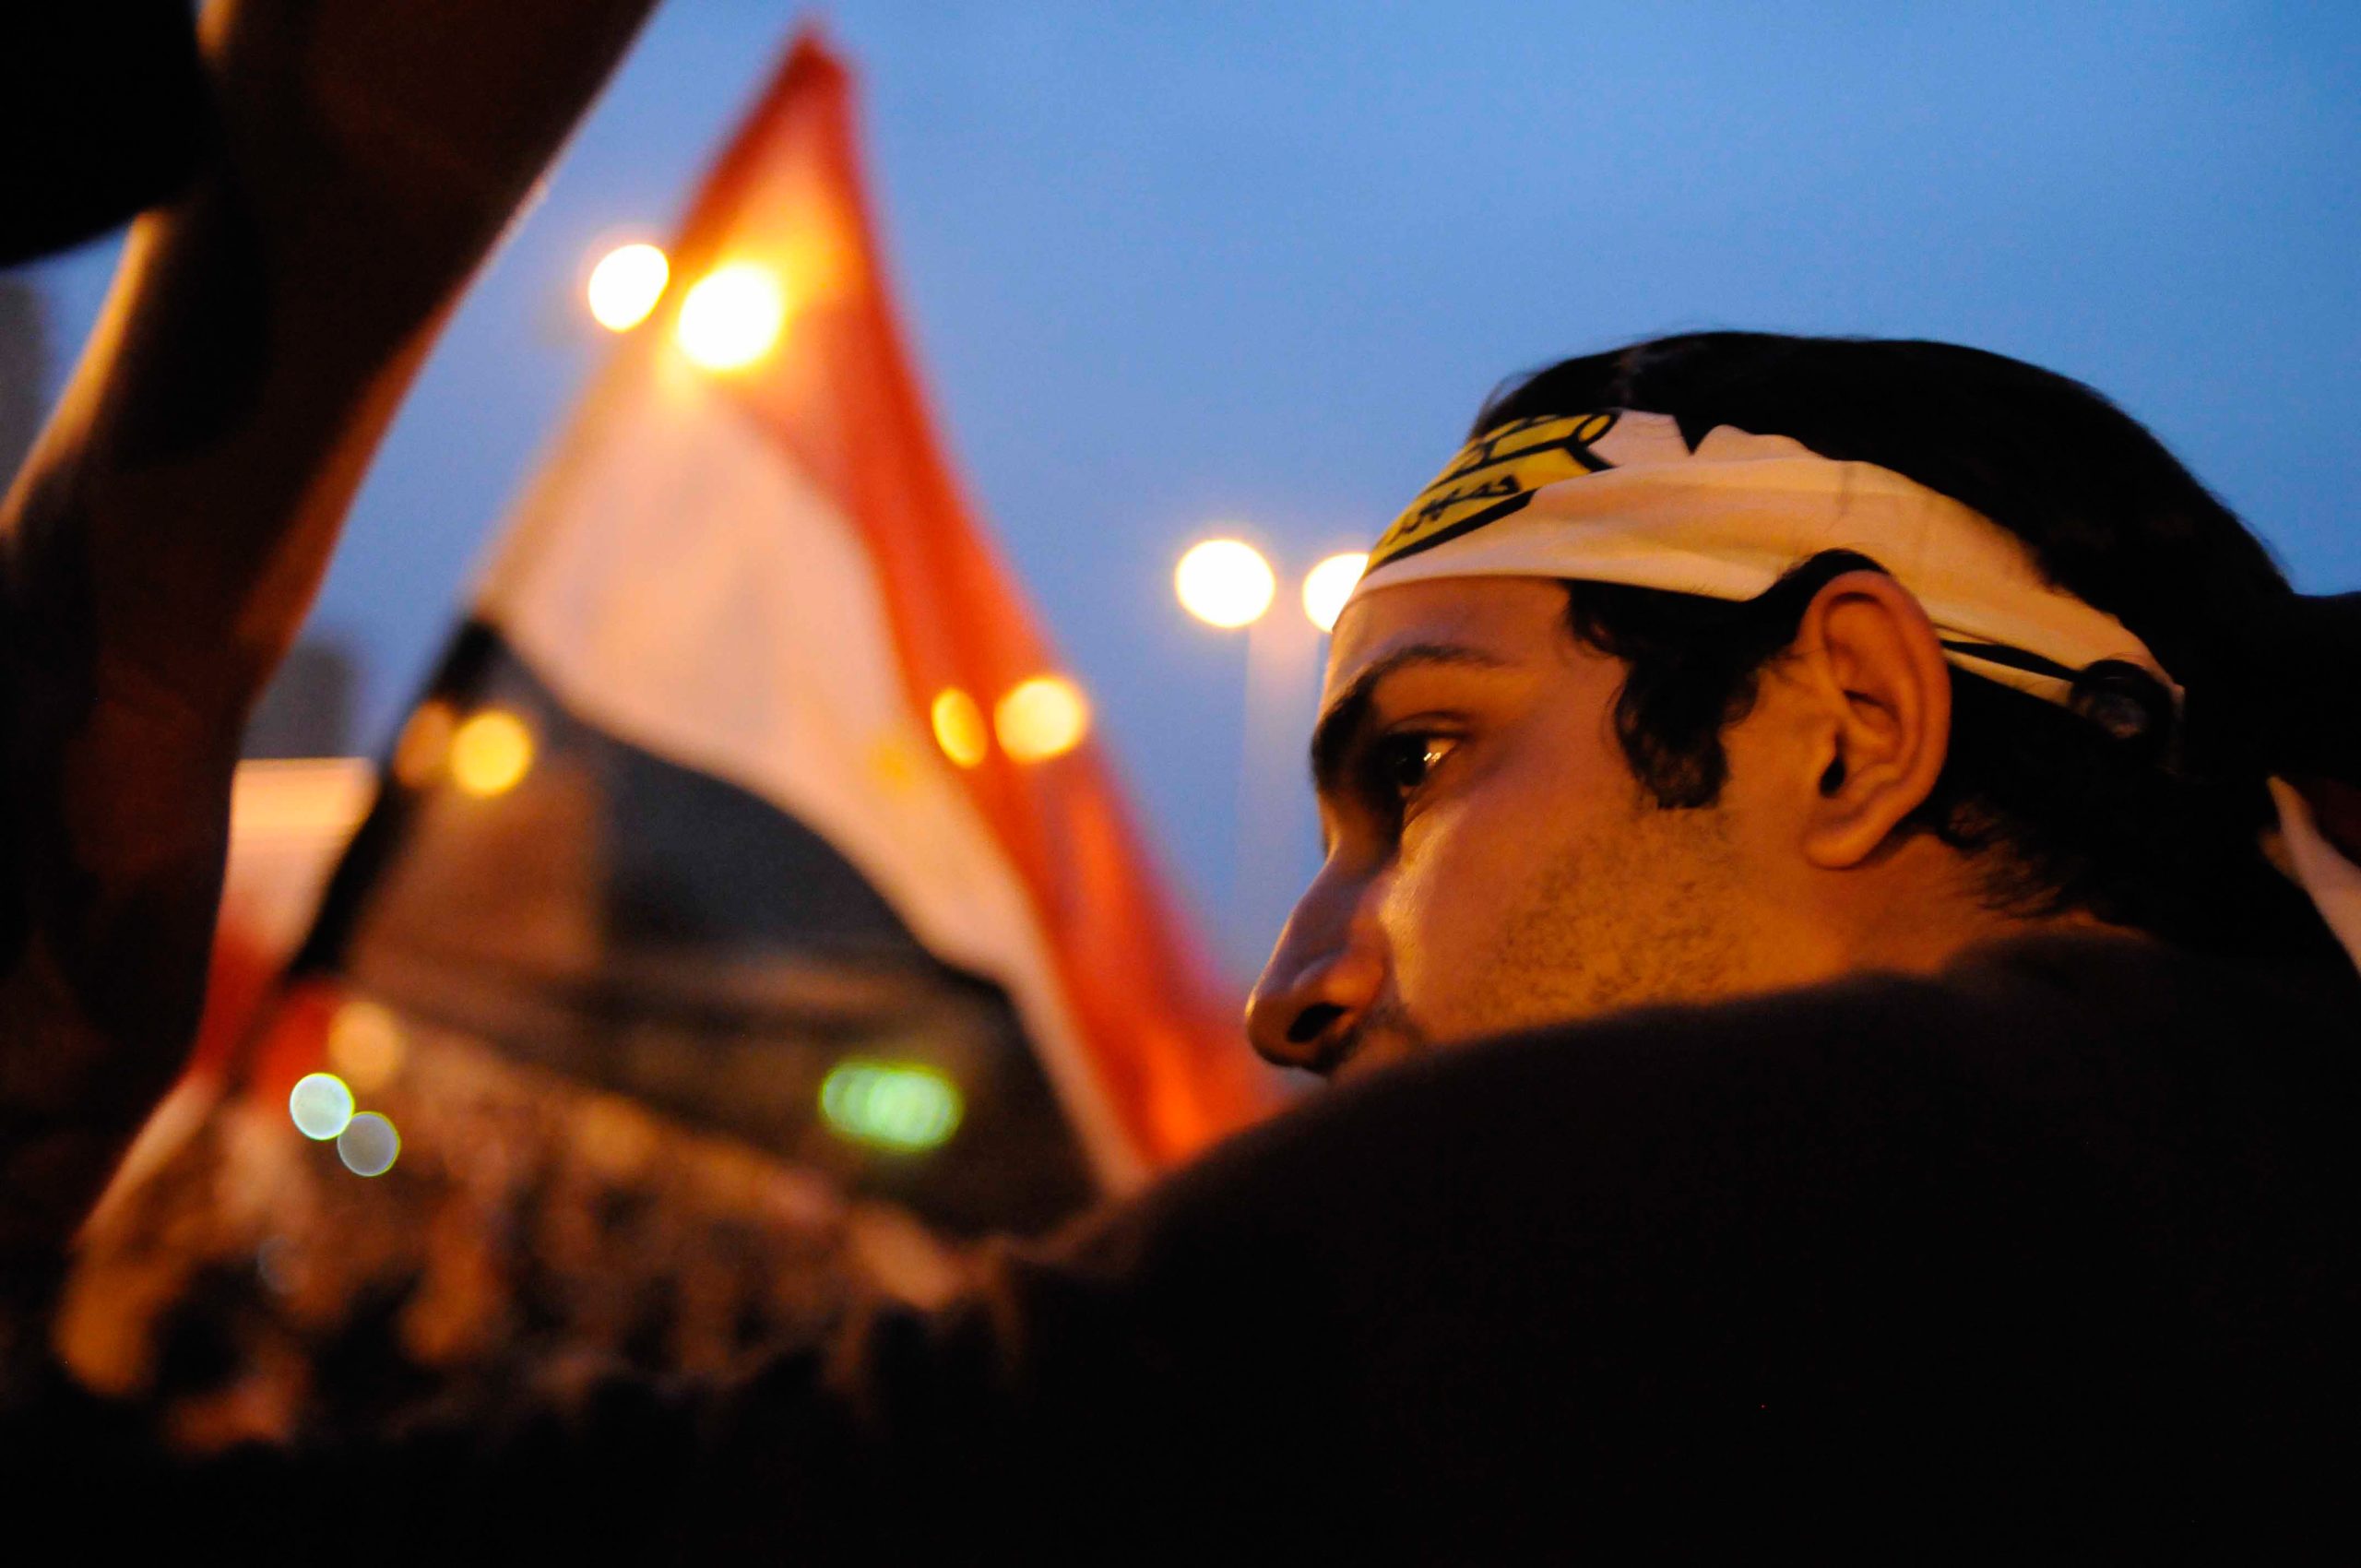 مصريون يحتجون في ميدان التحرير خلال "مسيرة المليون" للمطالبة بنهاية نظام مبارك، 1 فبراير 2011. هانز لوكاس عبر رويترز.